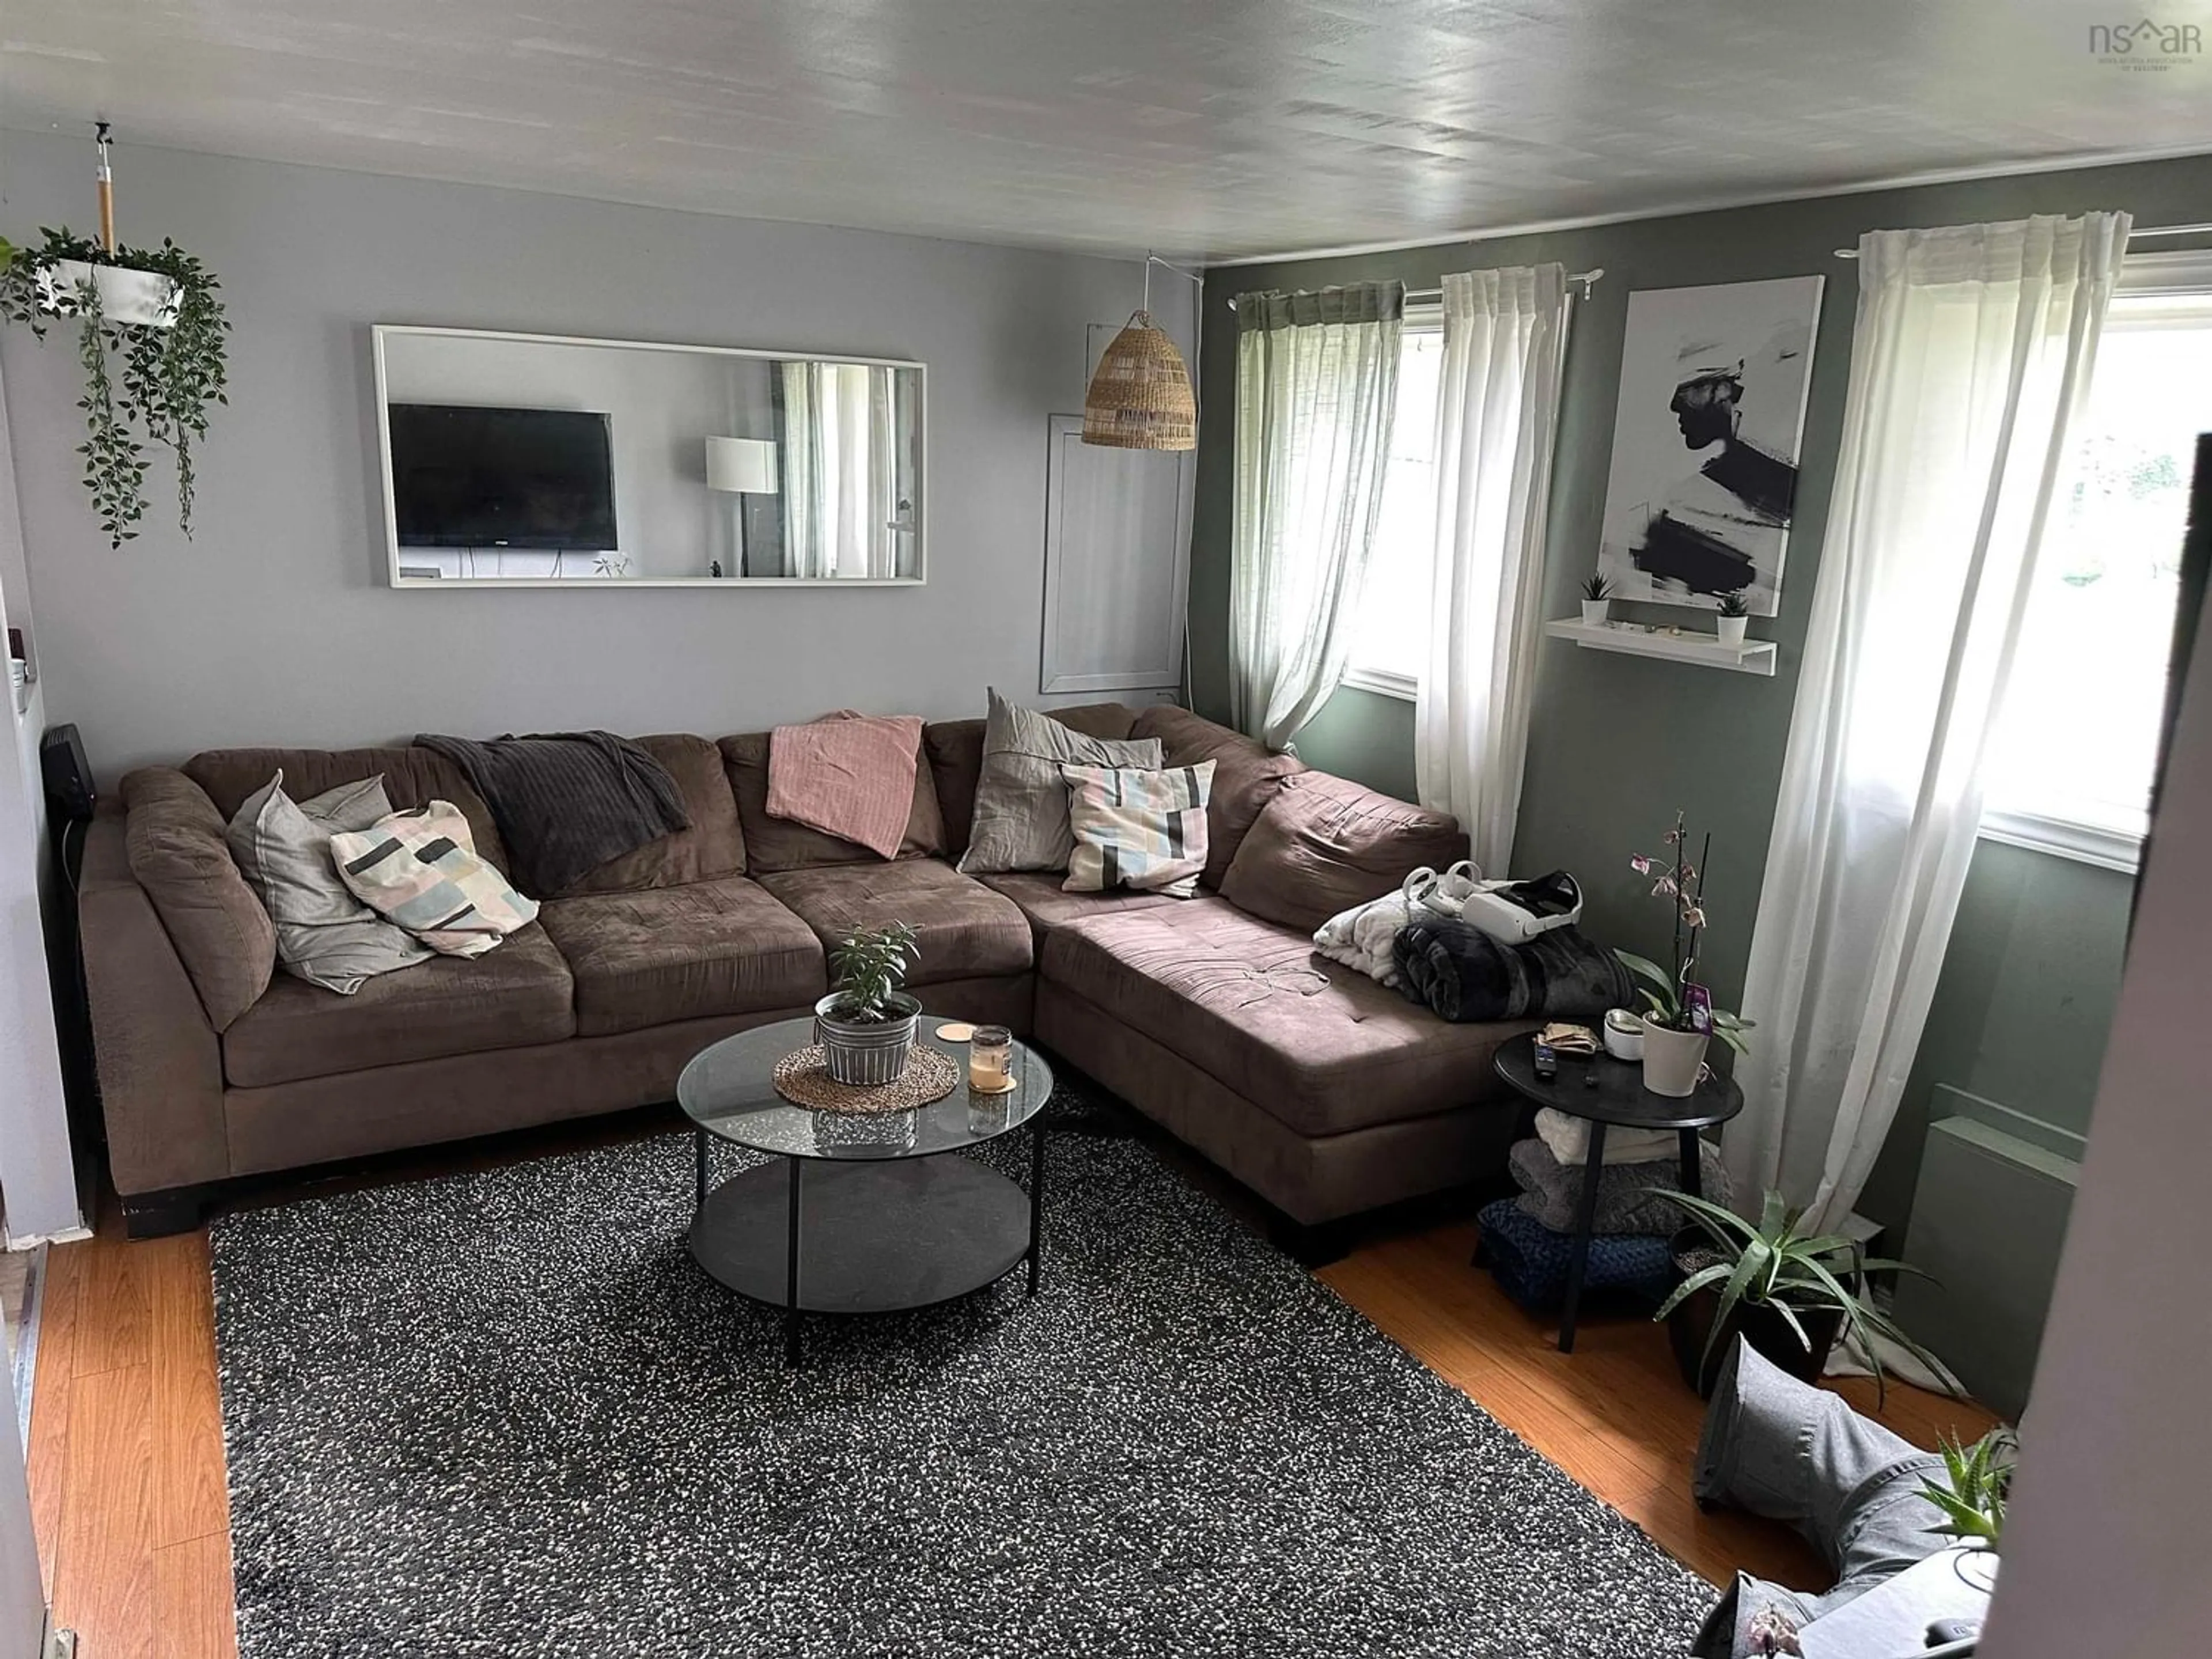 Living room for 4 Paul David Crt, Dartmouth Nova Scotia B2X 2Y8